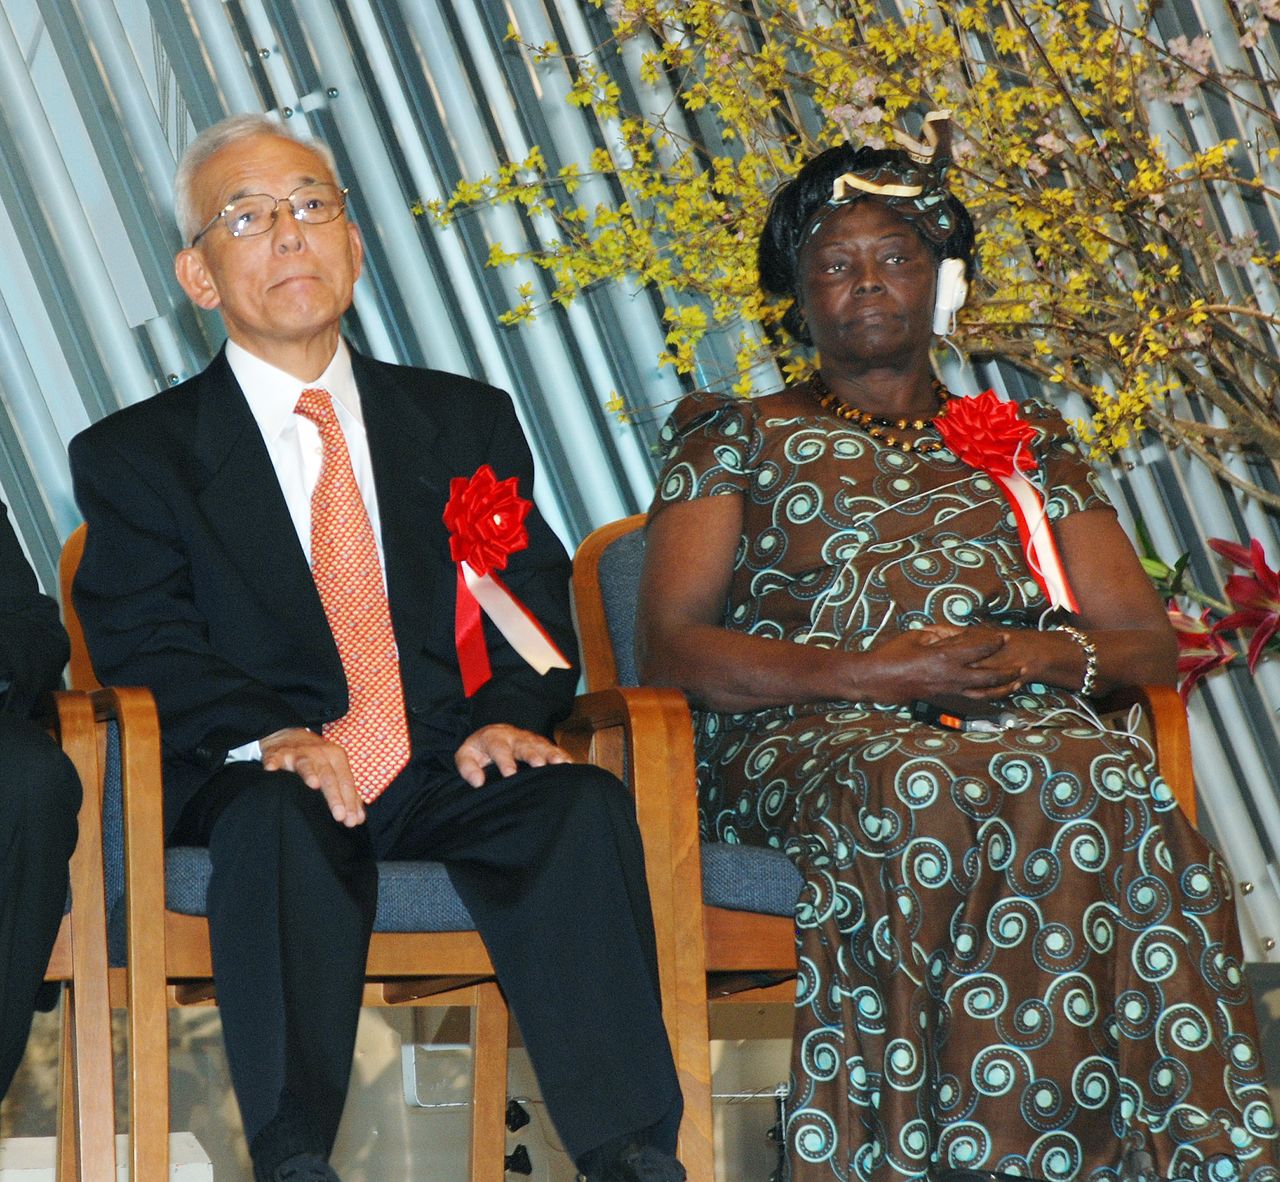 诺贝尔和平奖得主、因“绿带运动”而广为人知的旺加里･马塔伊（右）与美国普林斯顿大学高级研究员真锅淑郎出席“KYOTO地球环境殿堂”表彰仪式（摄于2010年2月14日，京都市，时事社）